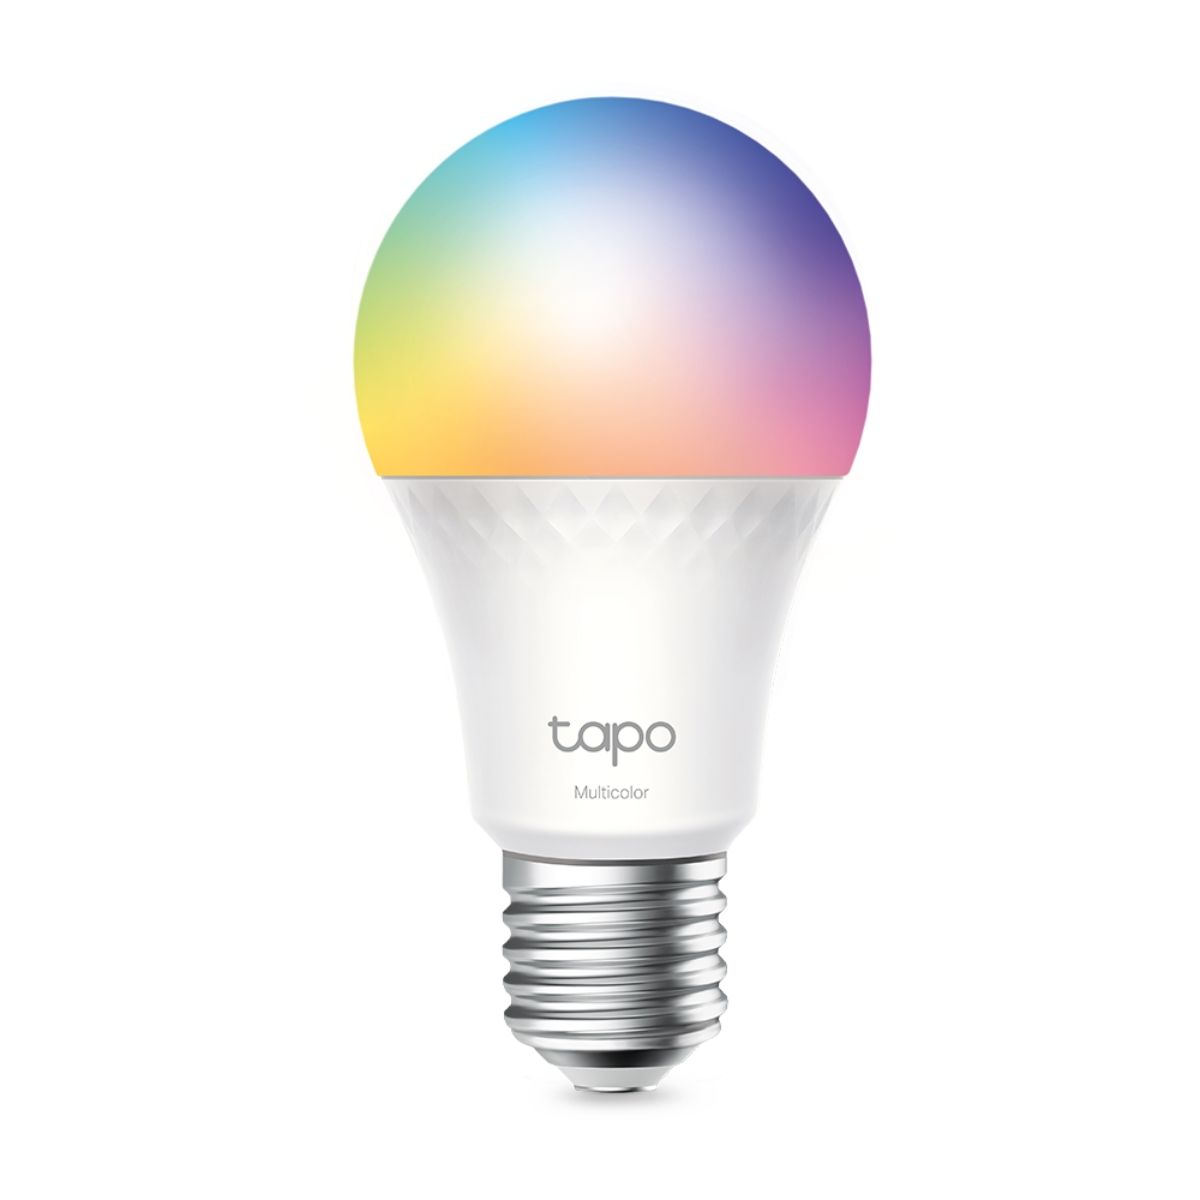 Đèn spotlight thông minh TP-Link Tapo L535E độ sáng cao 1055 Lumen, điều khiển giọng nói, tiết kiệm năng lượng